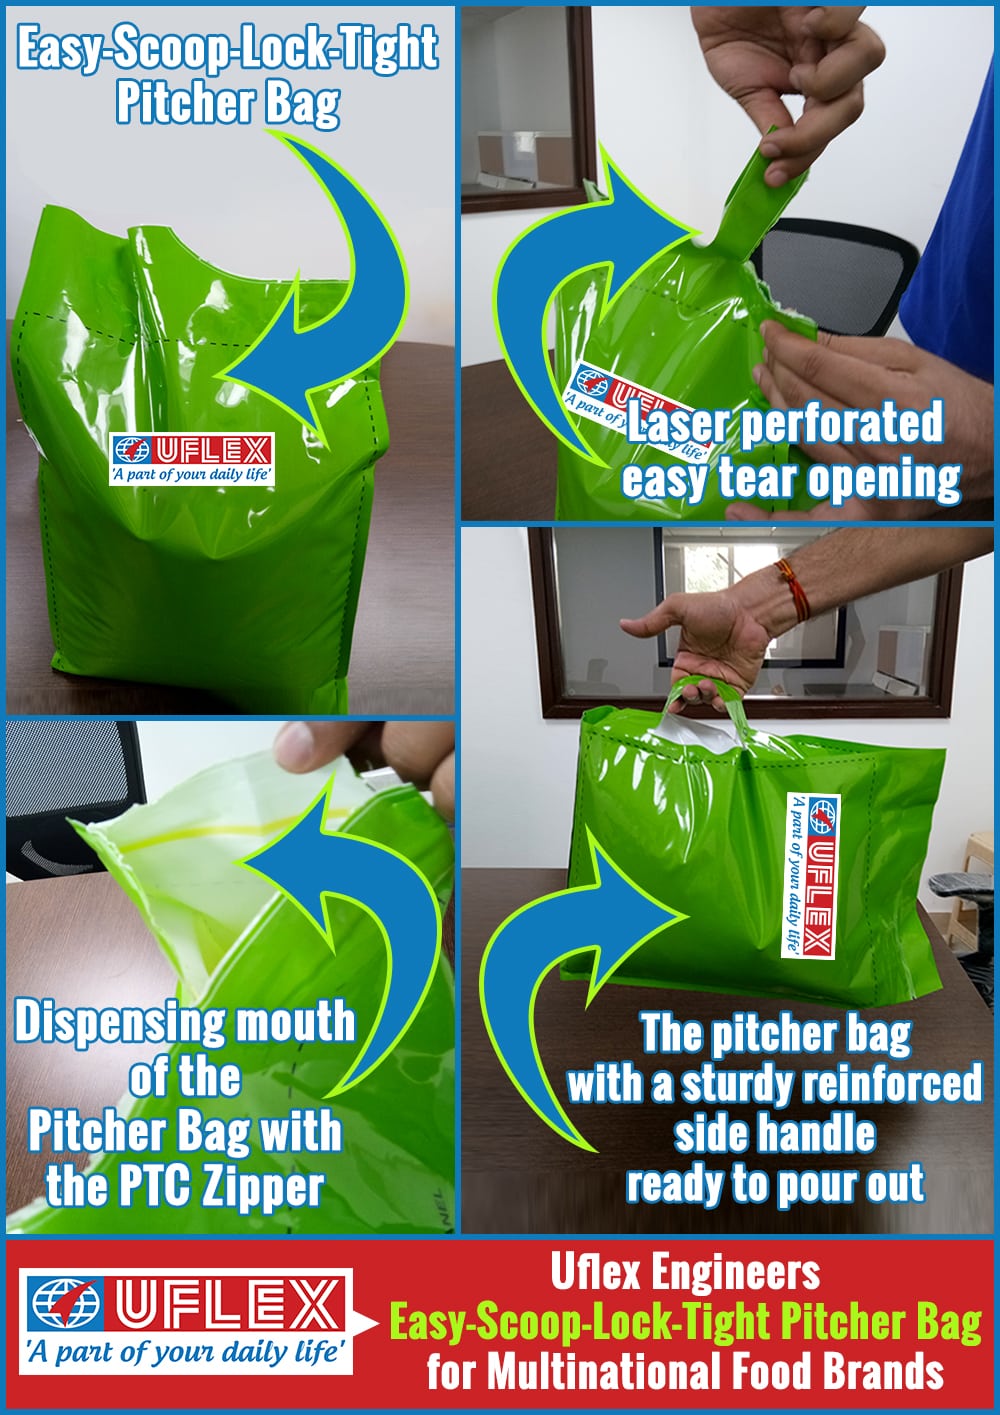 UFlex Ltd Engineers Easy-Scoop-Lock-Tight Pitcher Bag